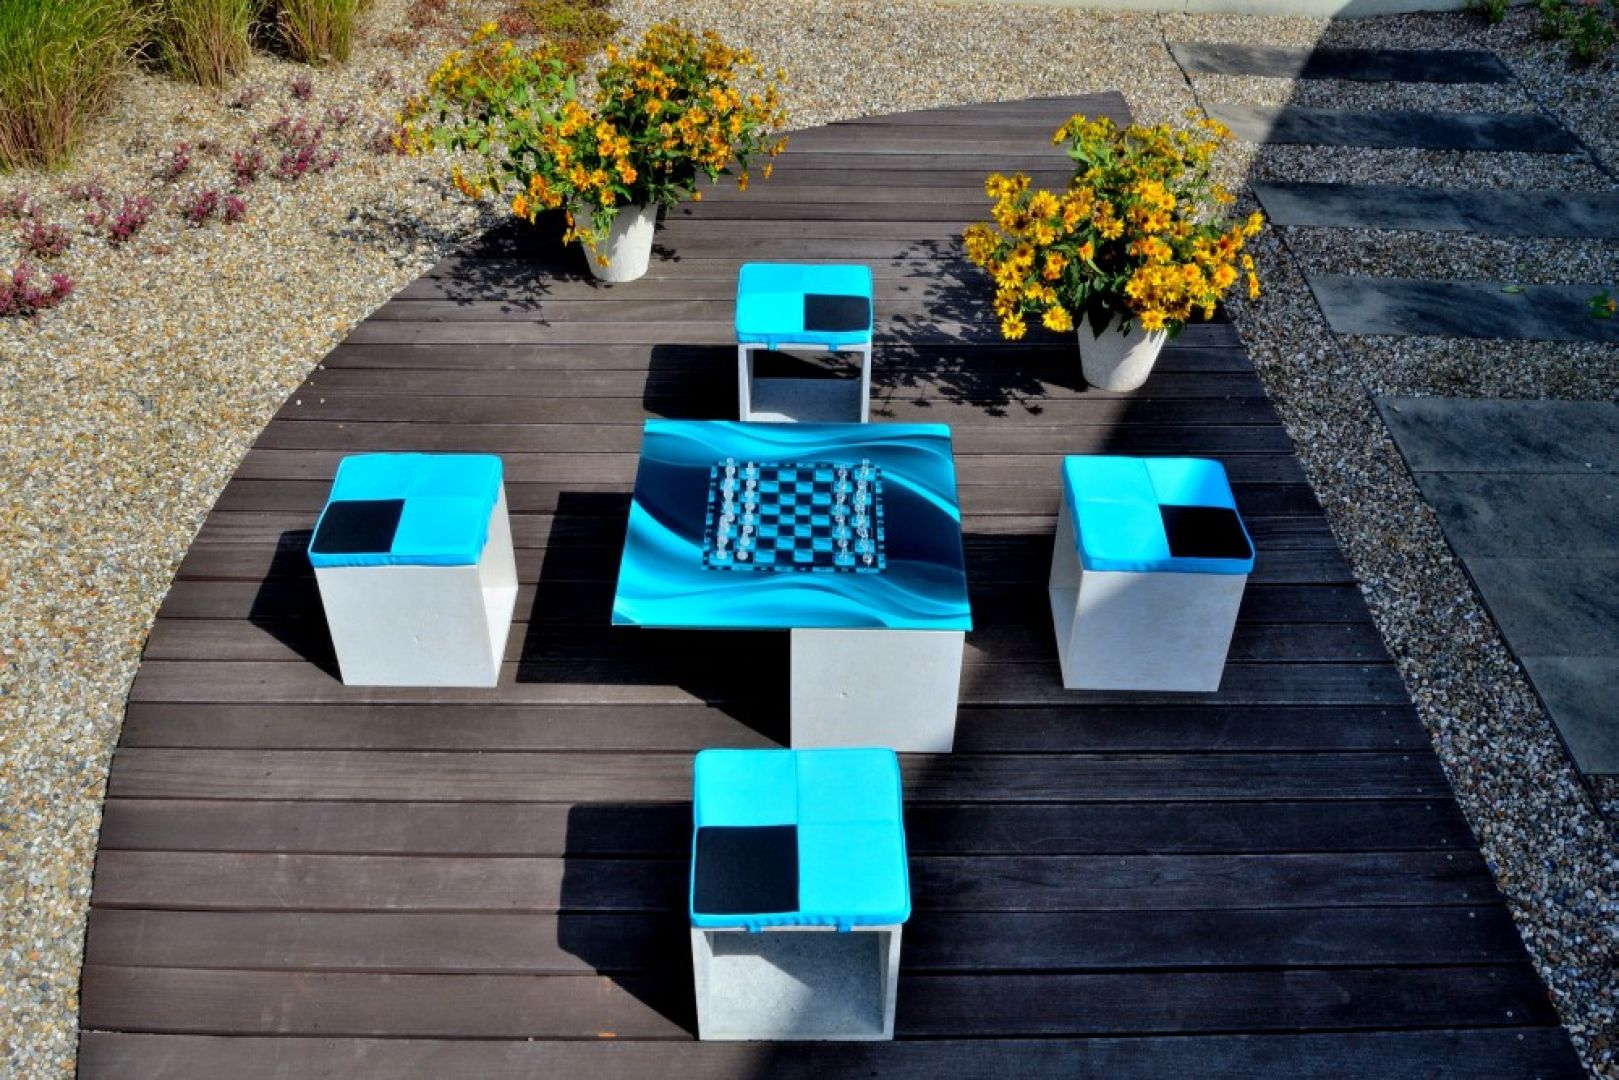 Modułowe meble betonowe marki Harena, stolik i siedziska
Fot. Archiwum